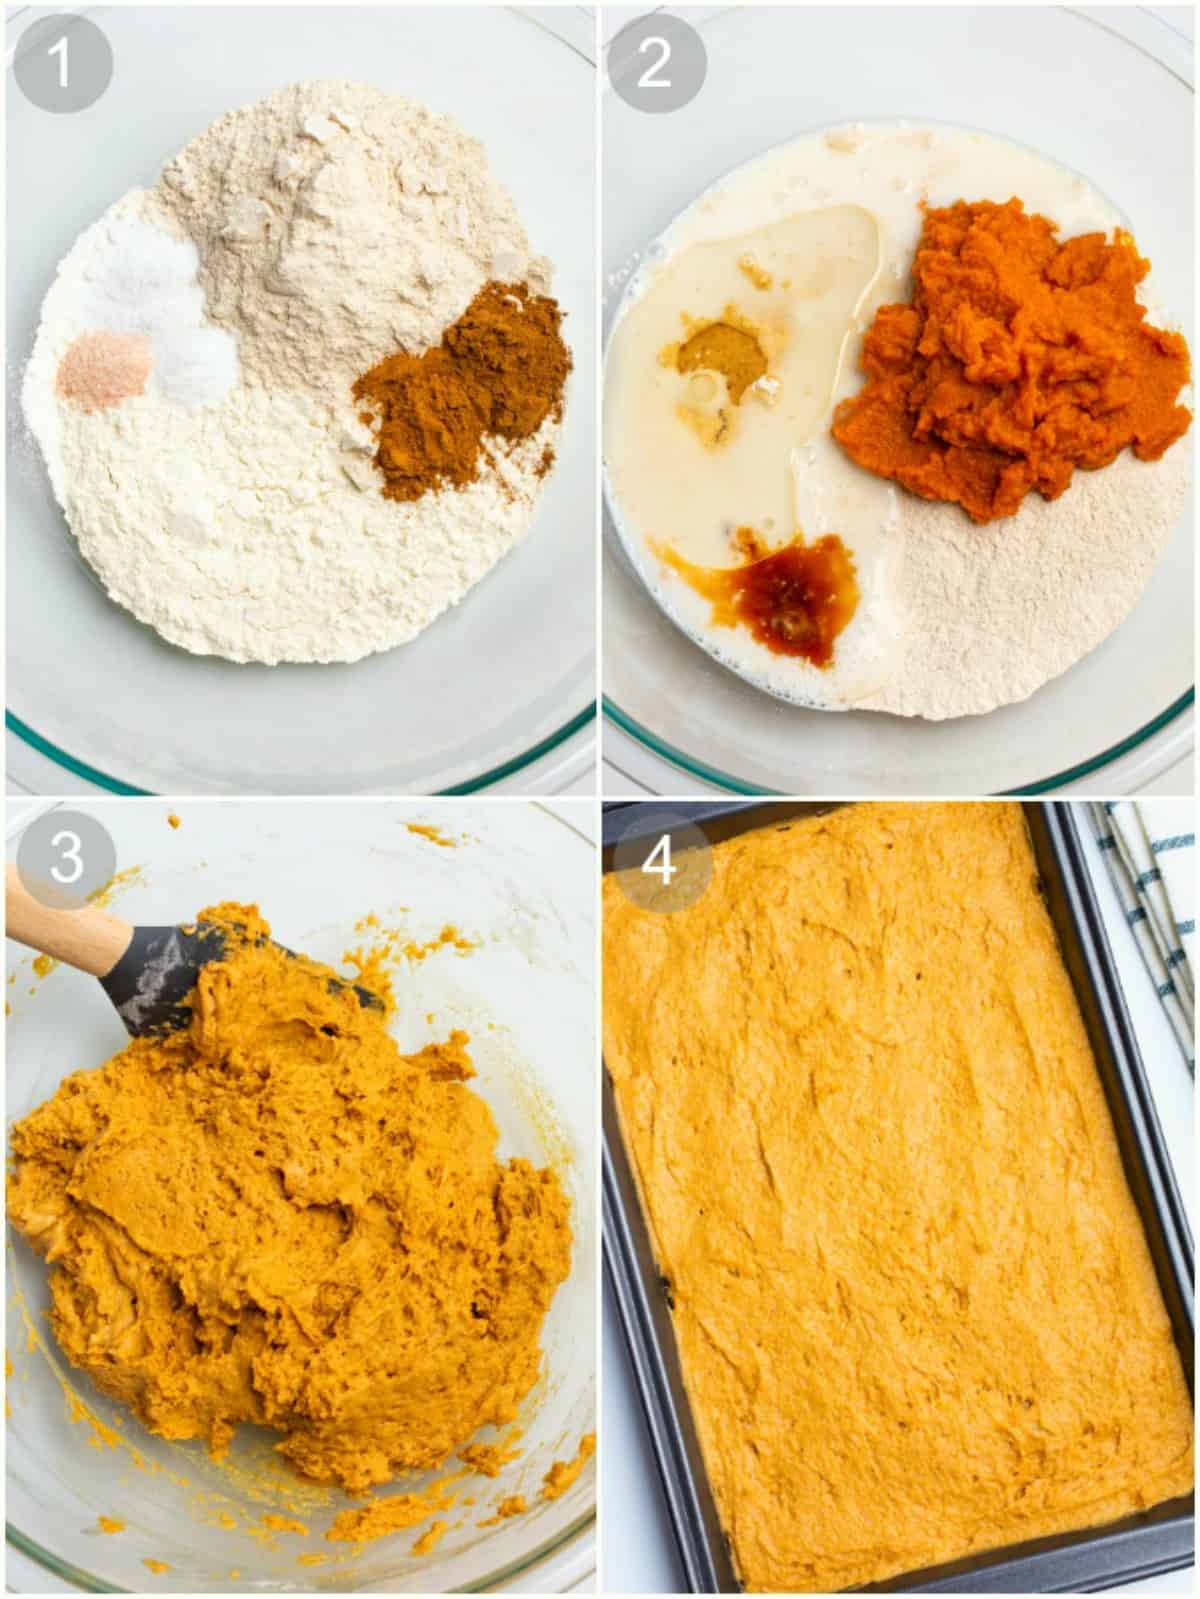 Process steps for making pumpkin cake batter. 